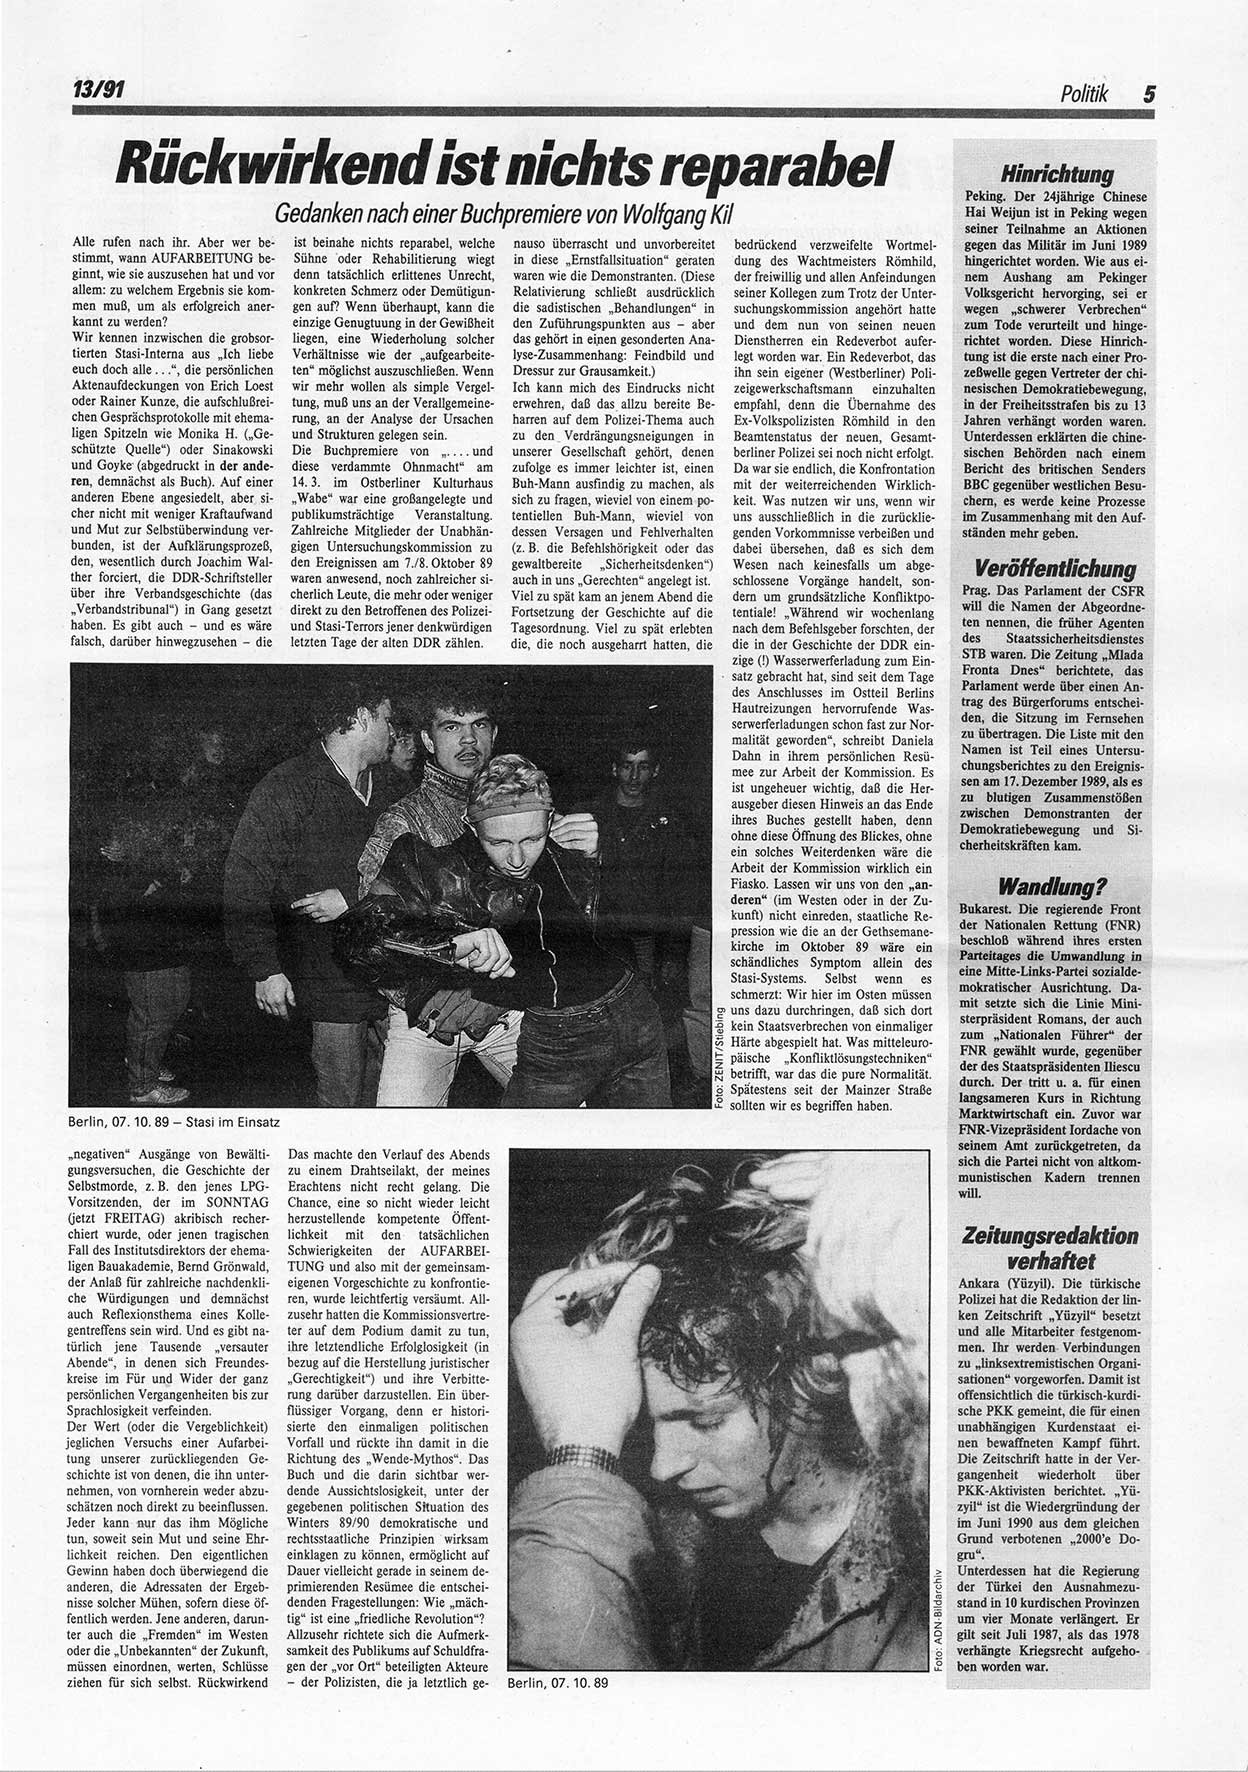 Die Andere, Unabhängige Wochenzeitung für Politik, Kultur und Kunst, Ausgabe 13 vom 27.3.1991, Seite 5 (And. W.-Zg. Ausg. 13 1991, S. 5)